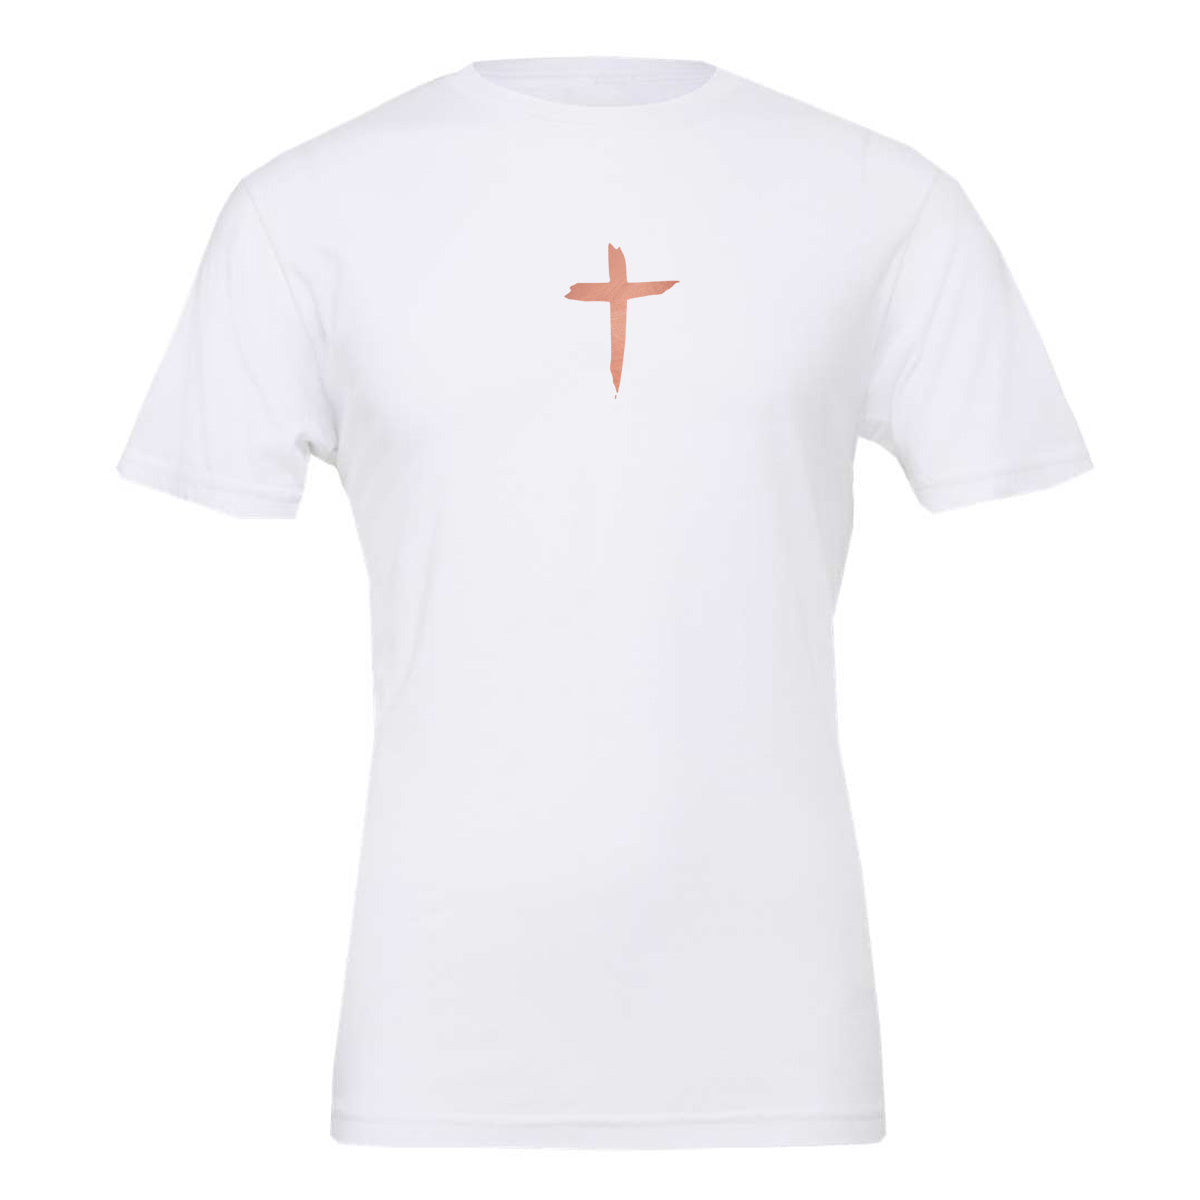 Jesus Has My Back with Rose Gold - White (Tee/Hoodie/Sweatshirt)